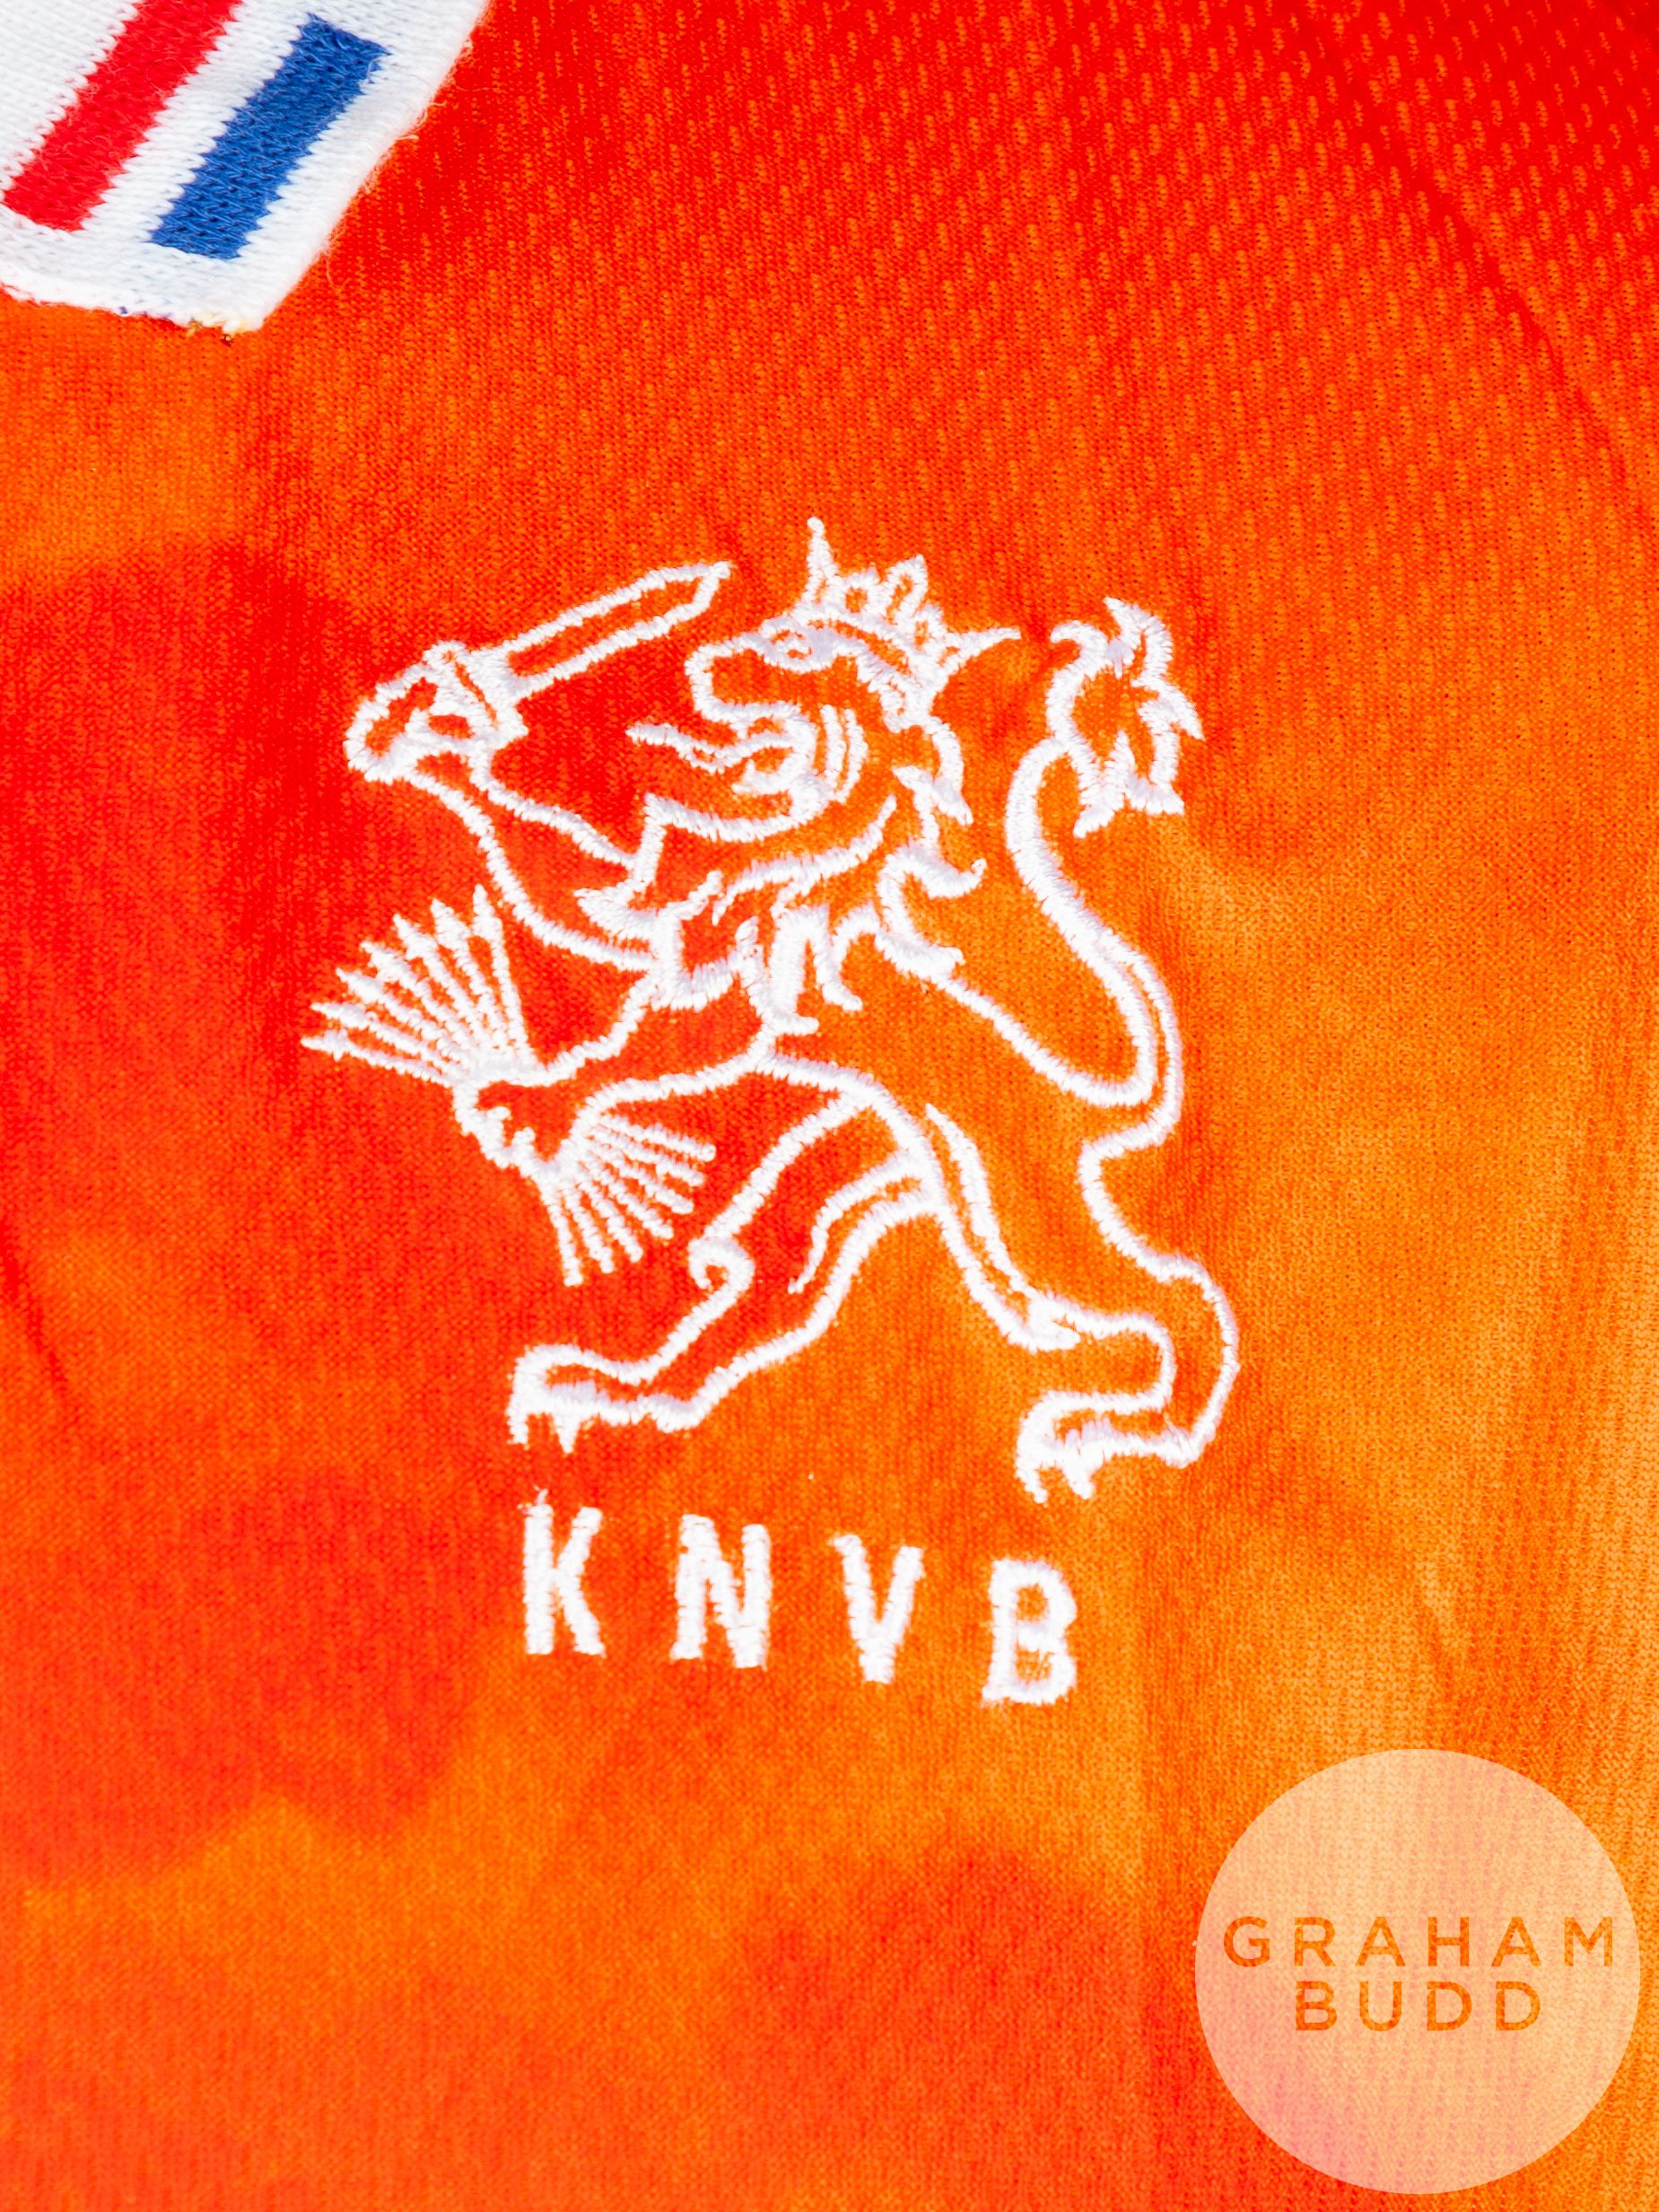 Orange and white No.5 Holland international short-sleeved shirt, 1996 - Image 3 of 4